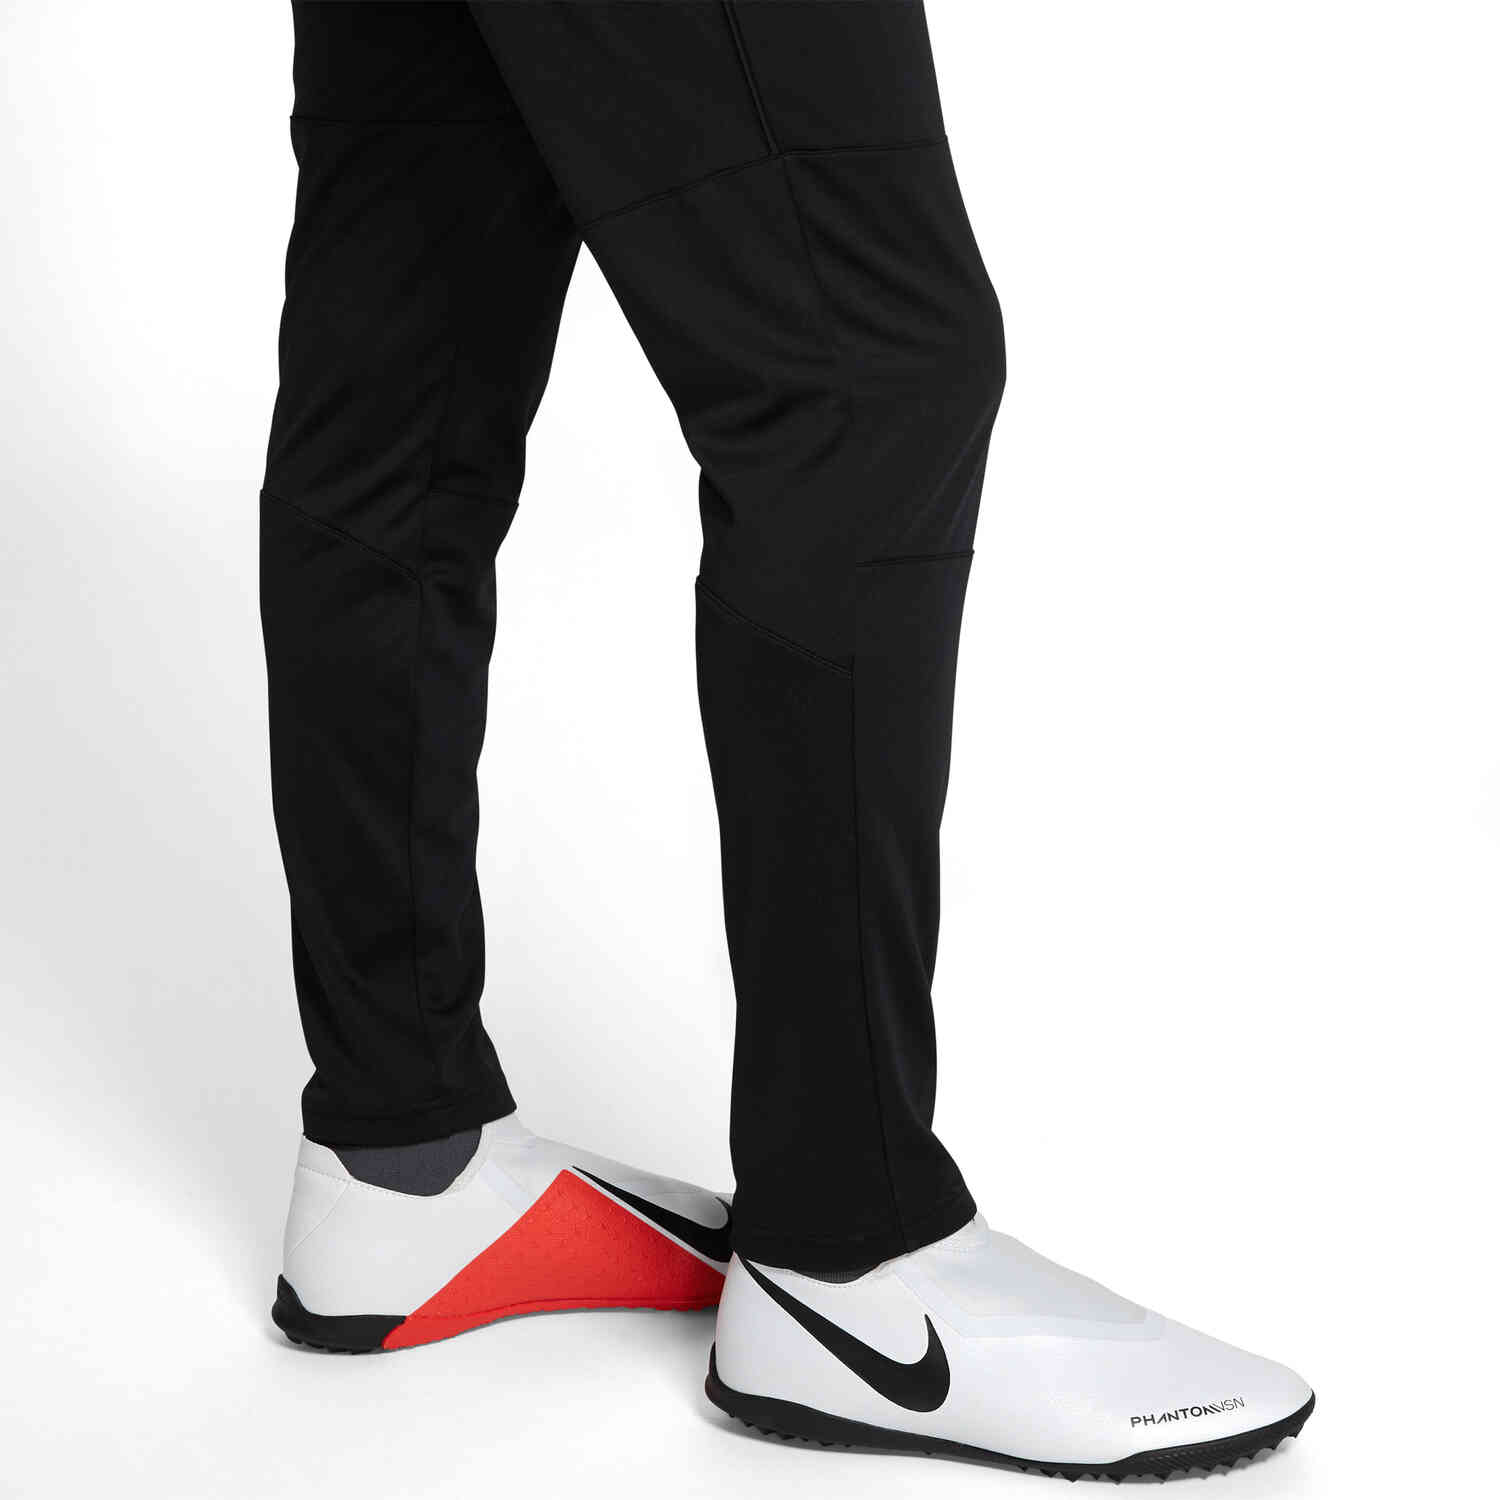 Nike Park20 Training Pants - Black - SoccerPro